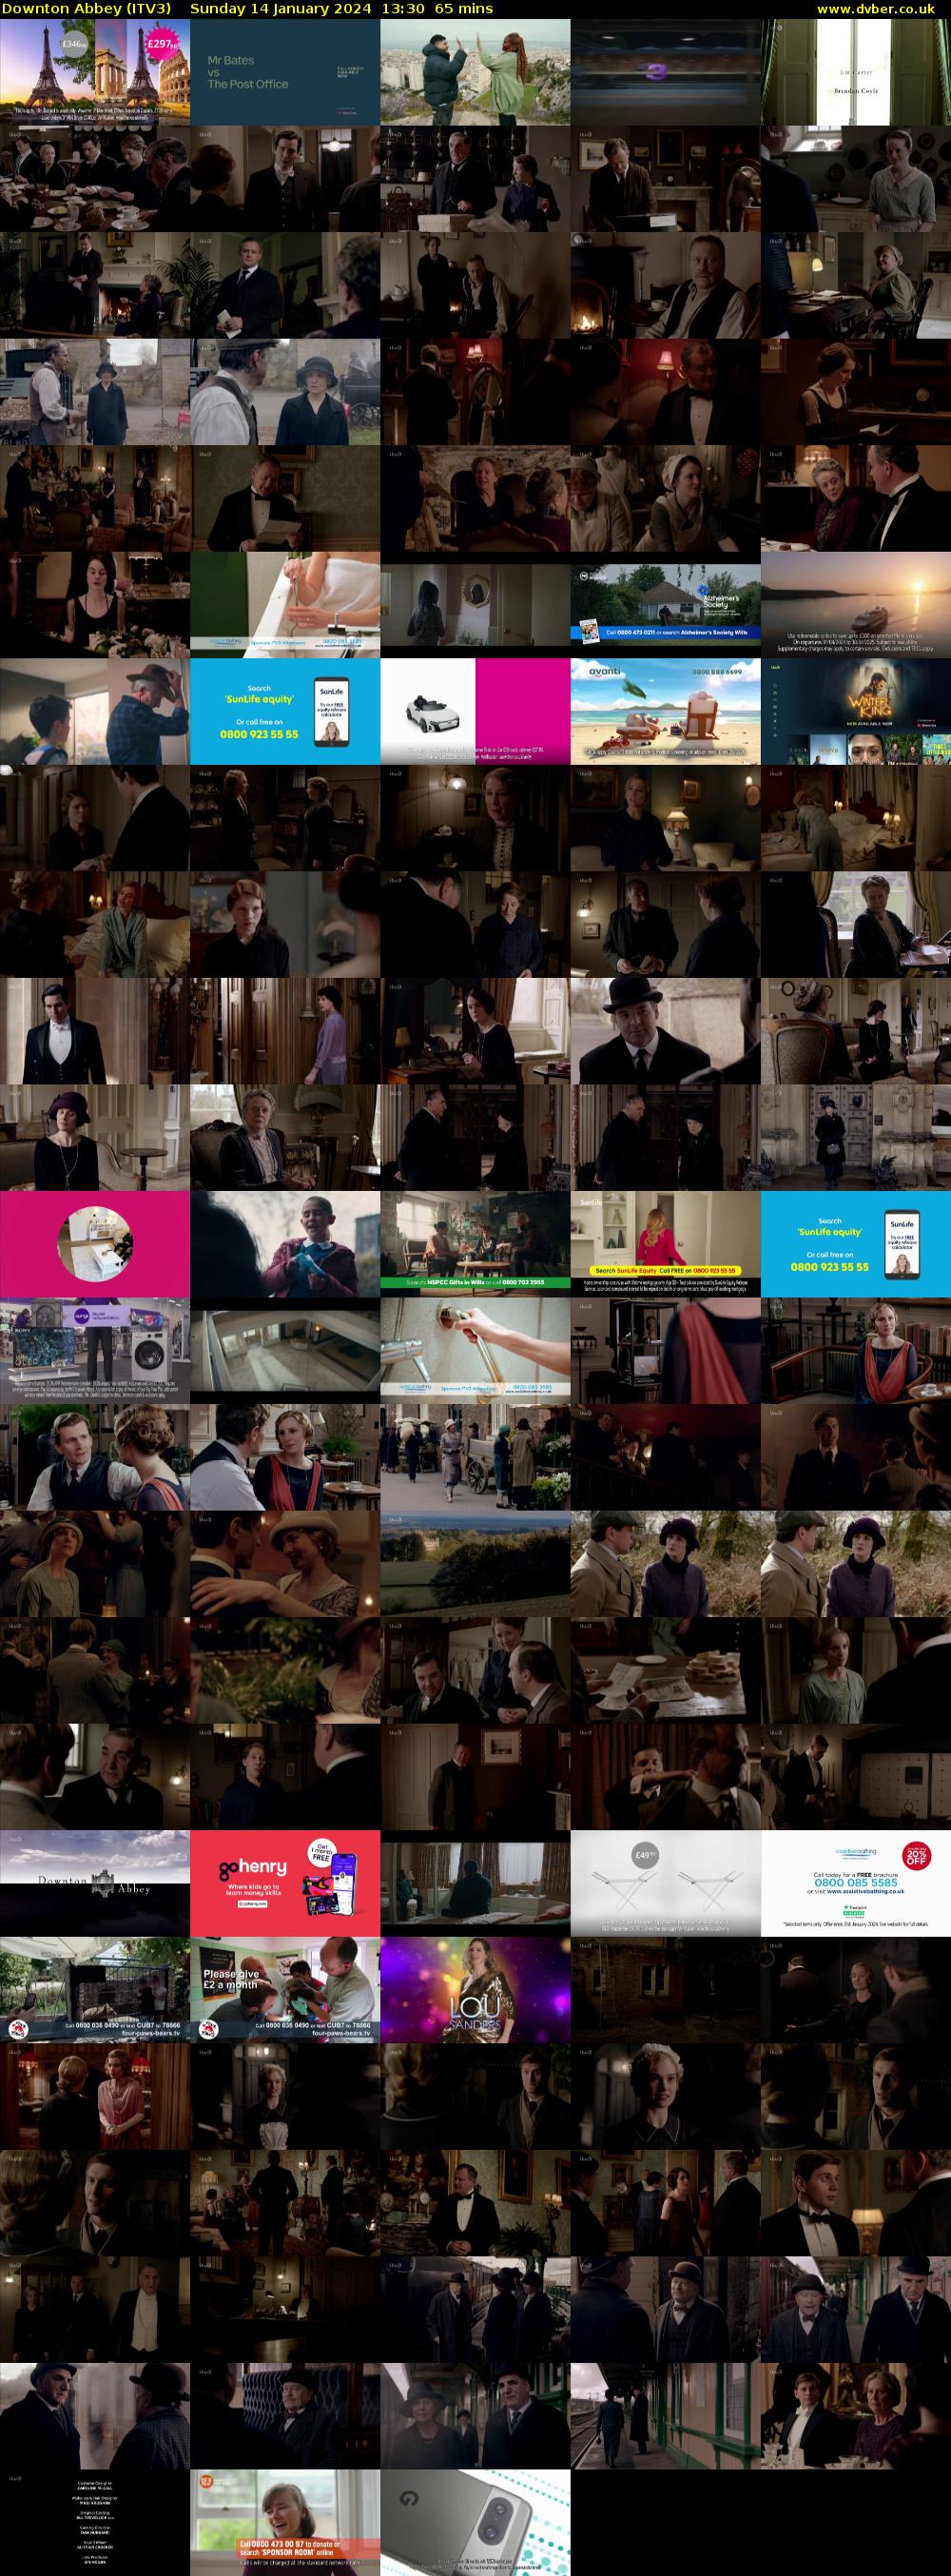 Downton Abbey (ITV3) Sunday 14 January 2024 13:30 - 14:35